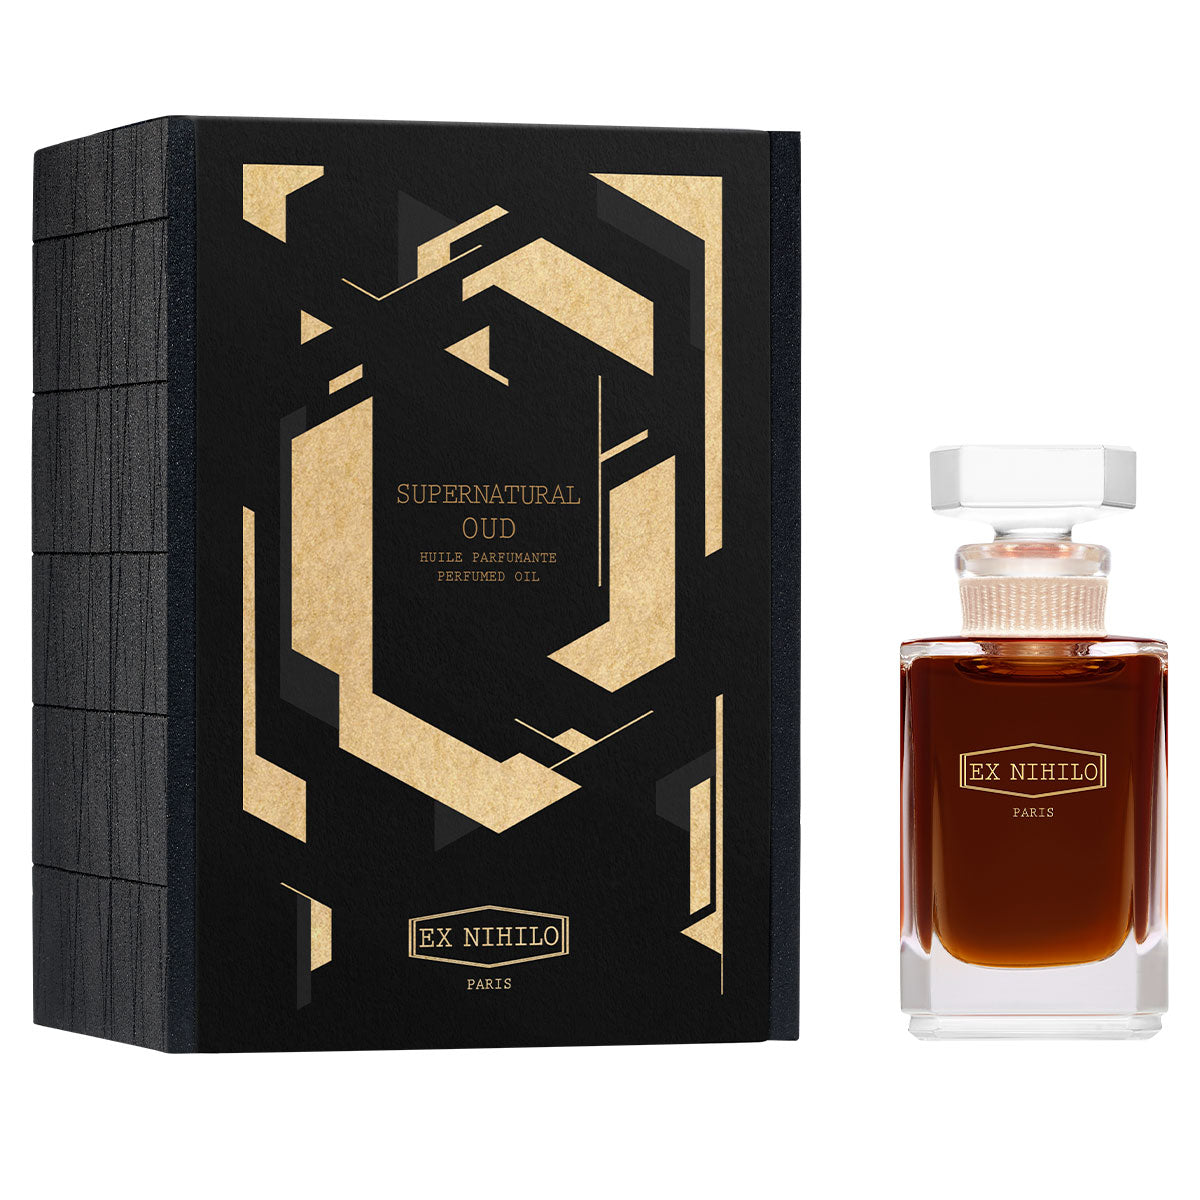 Essence Supernatural Oud - EX NIHILO - Perfume Oil 15 ml